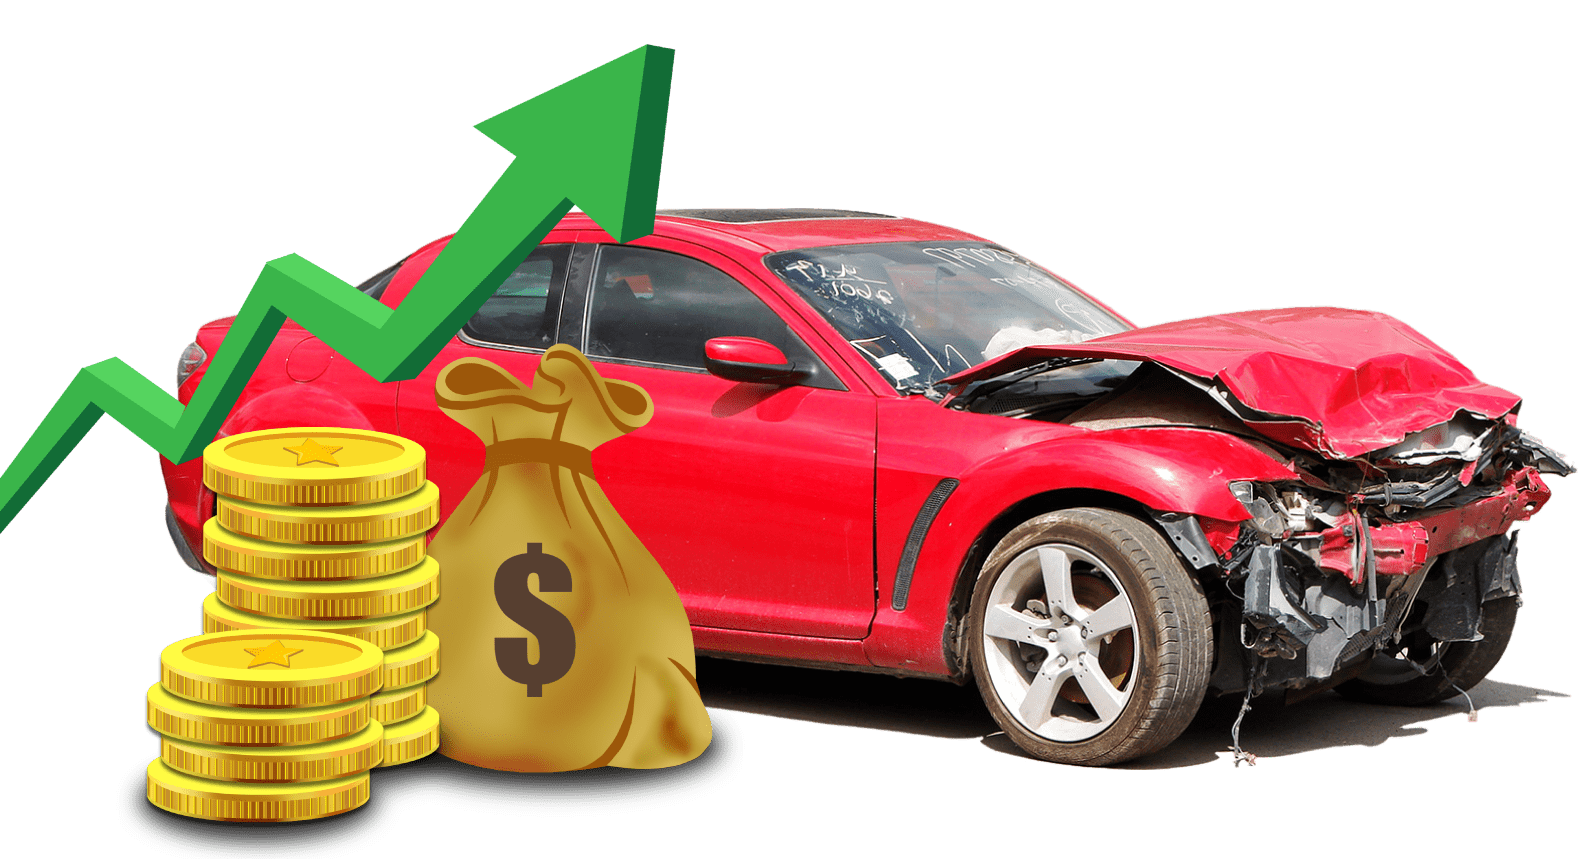  Cash for junk cars Rocksberg 